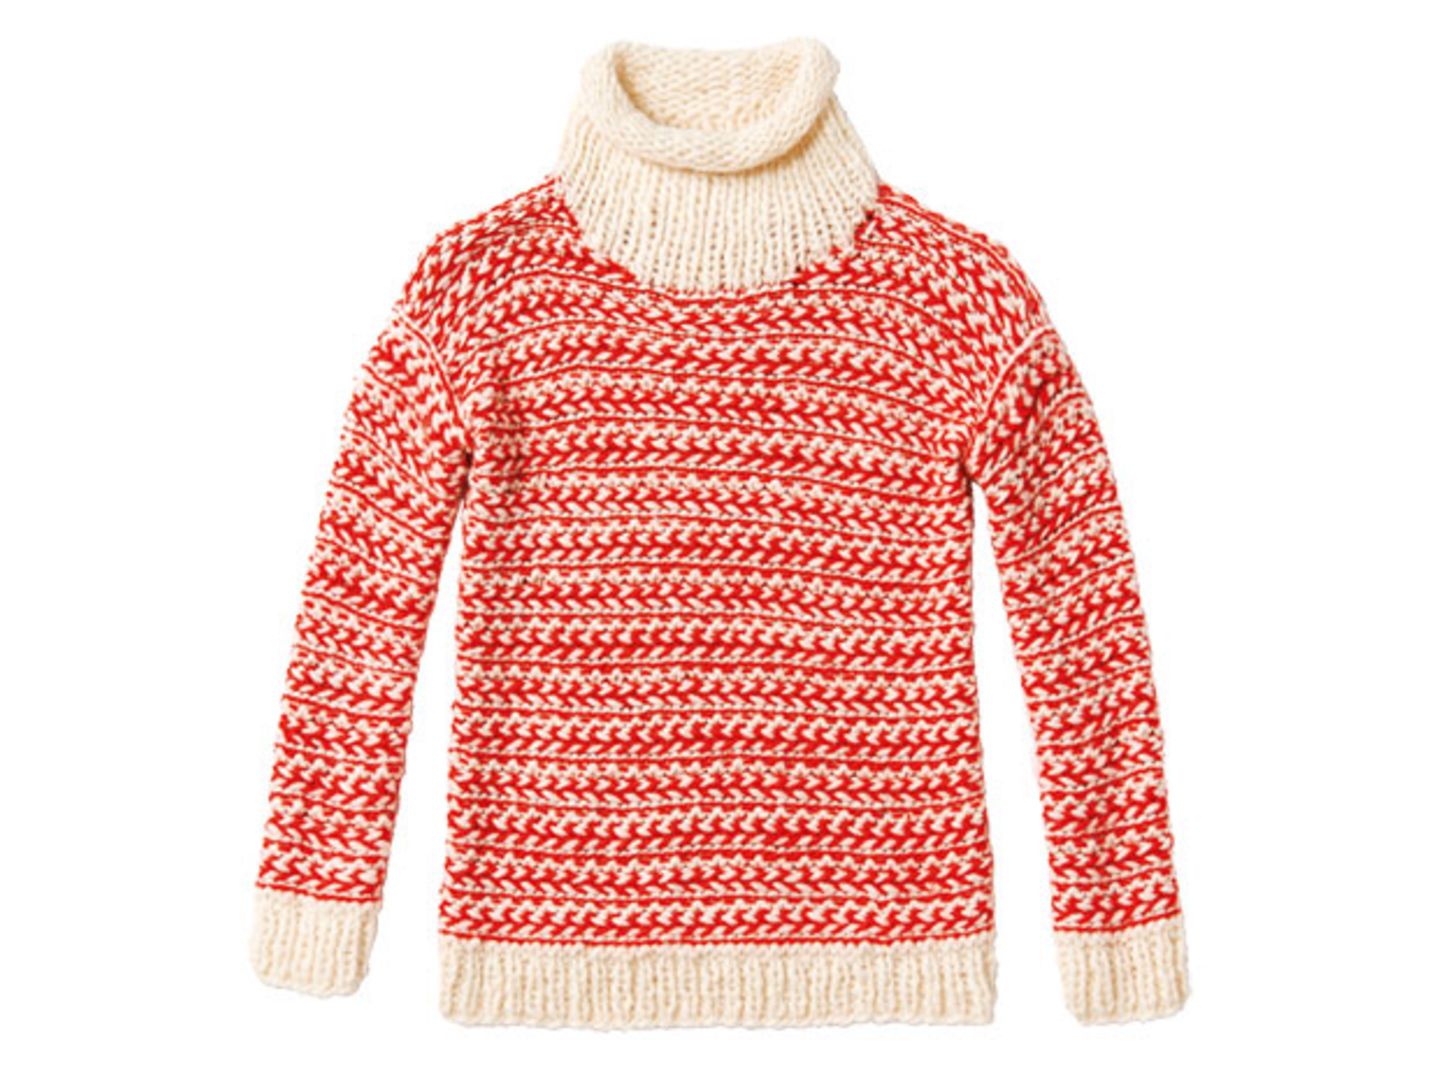 Zweifarbigen Pullover stricken - eine Anleitung